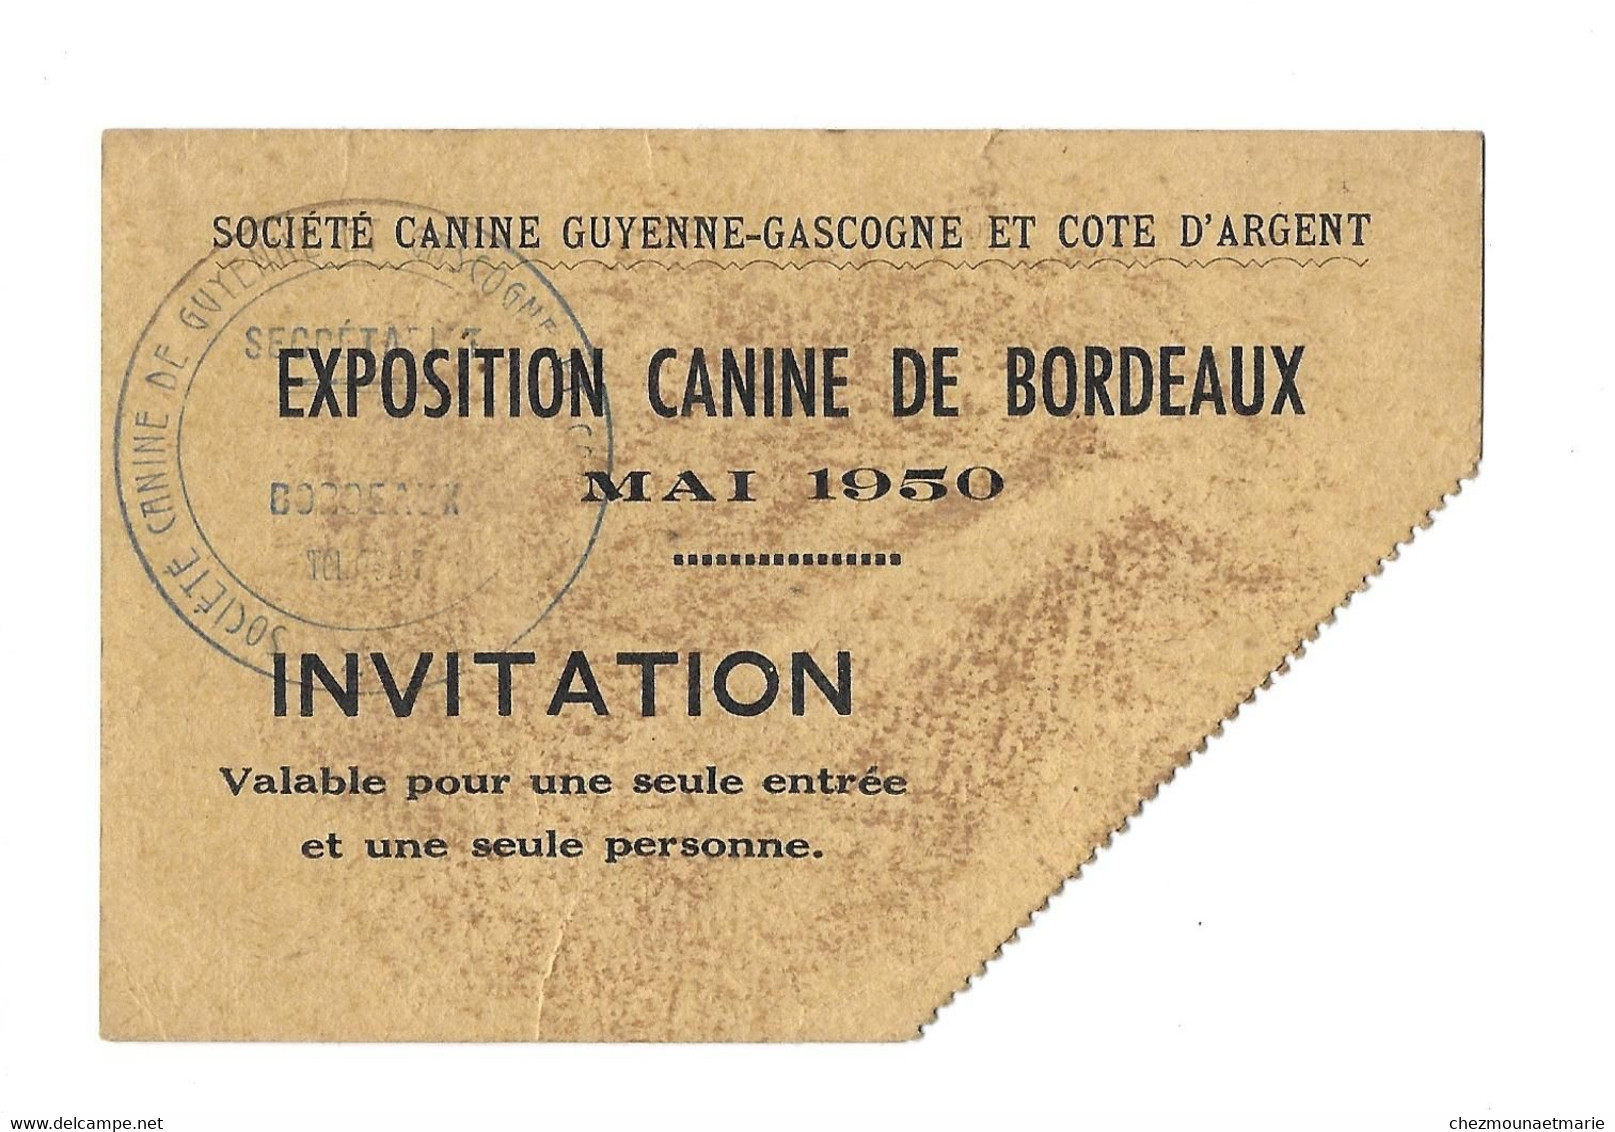 1950 BORDEAUX - EXPOSITION CANINE - SOCIETE GUYENNE GASCOGNE COTE D ARGENT - TICKET INVITATION - Tickets D'entrée